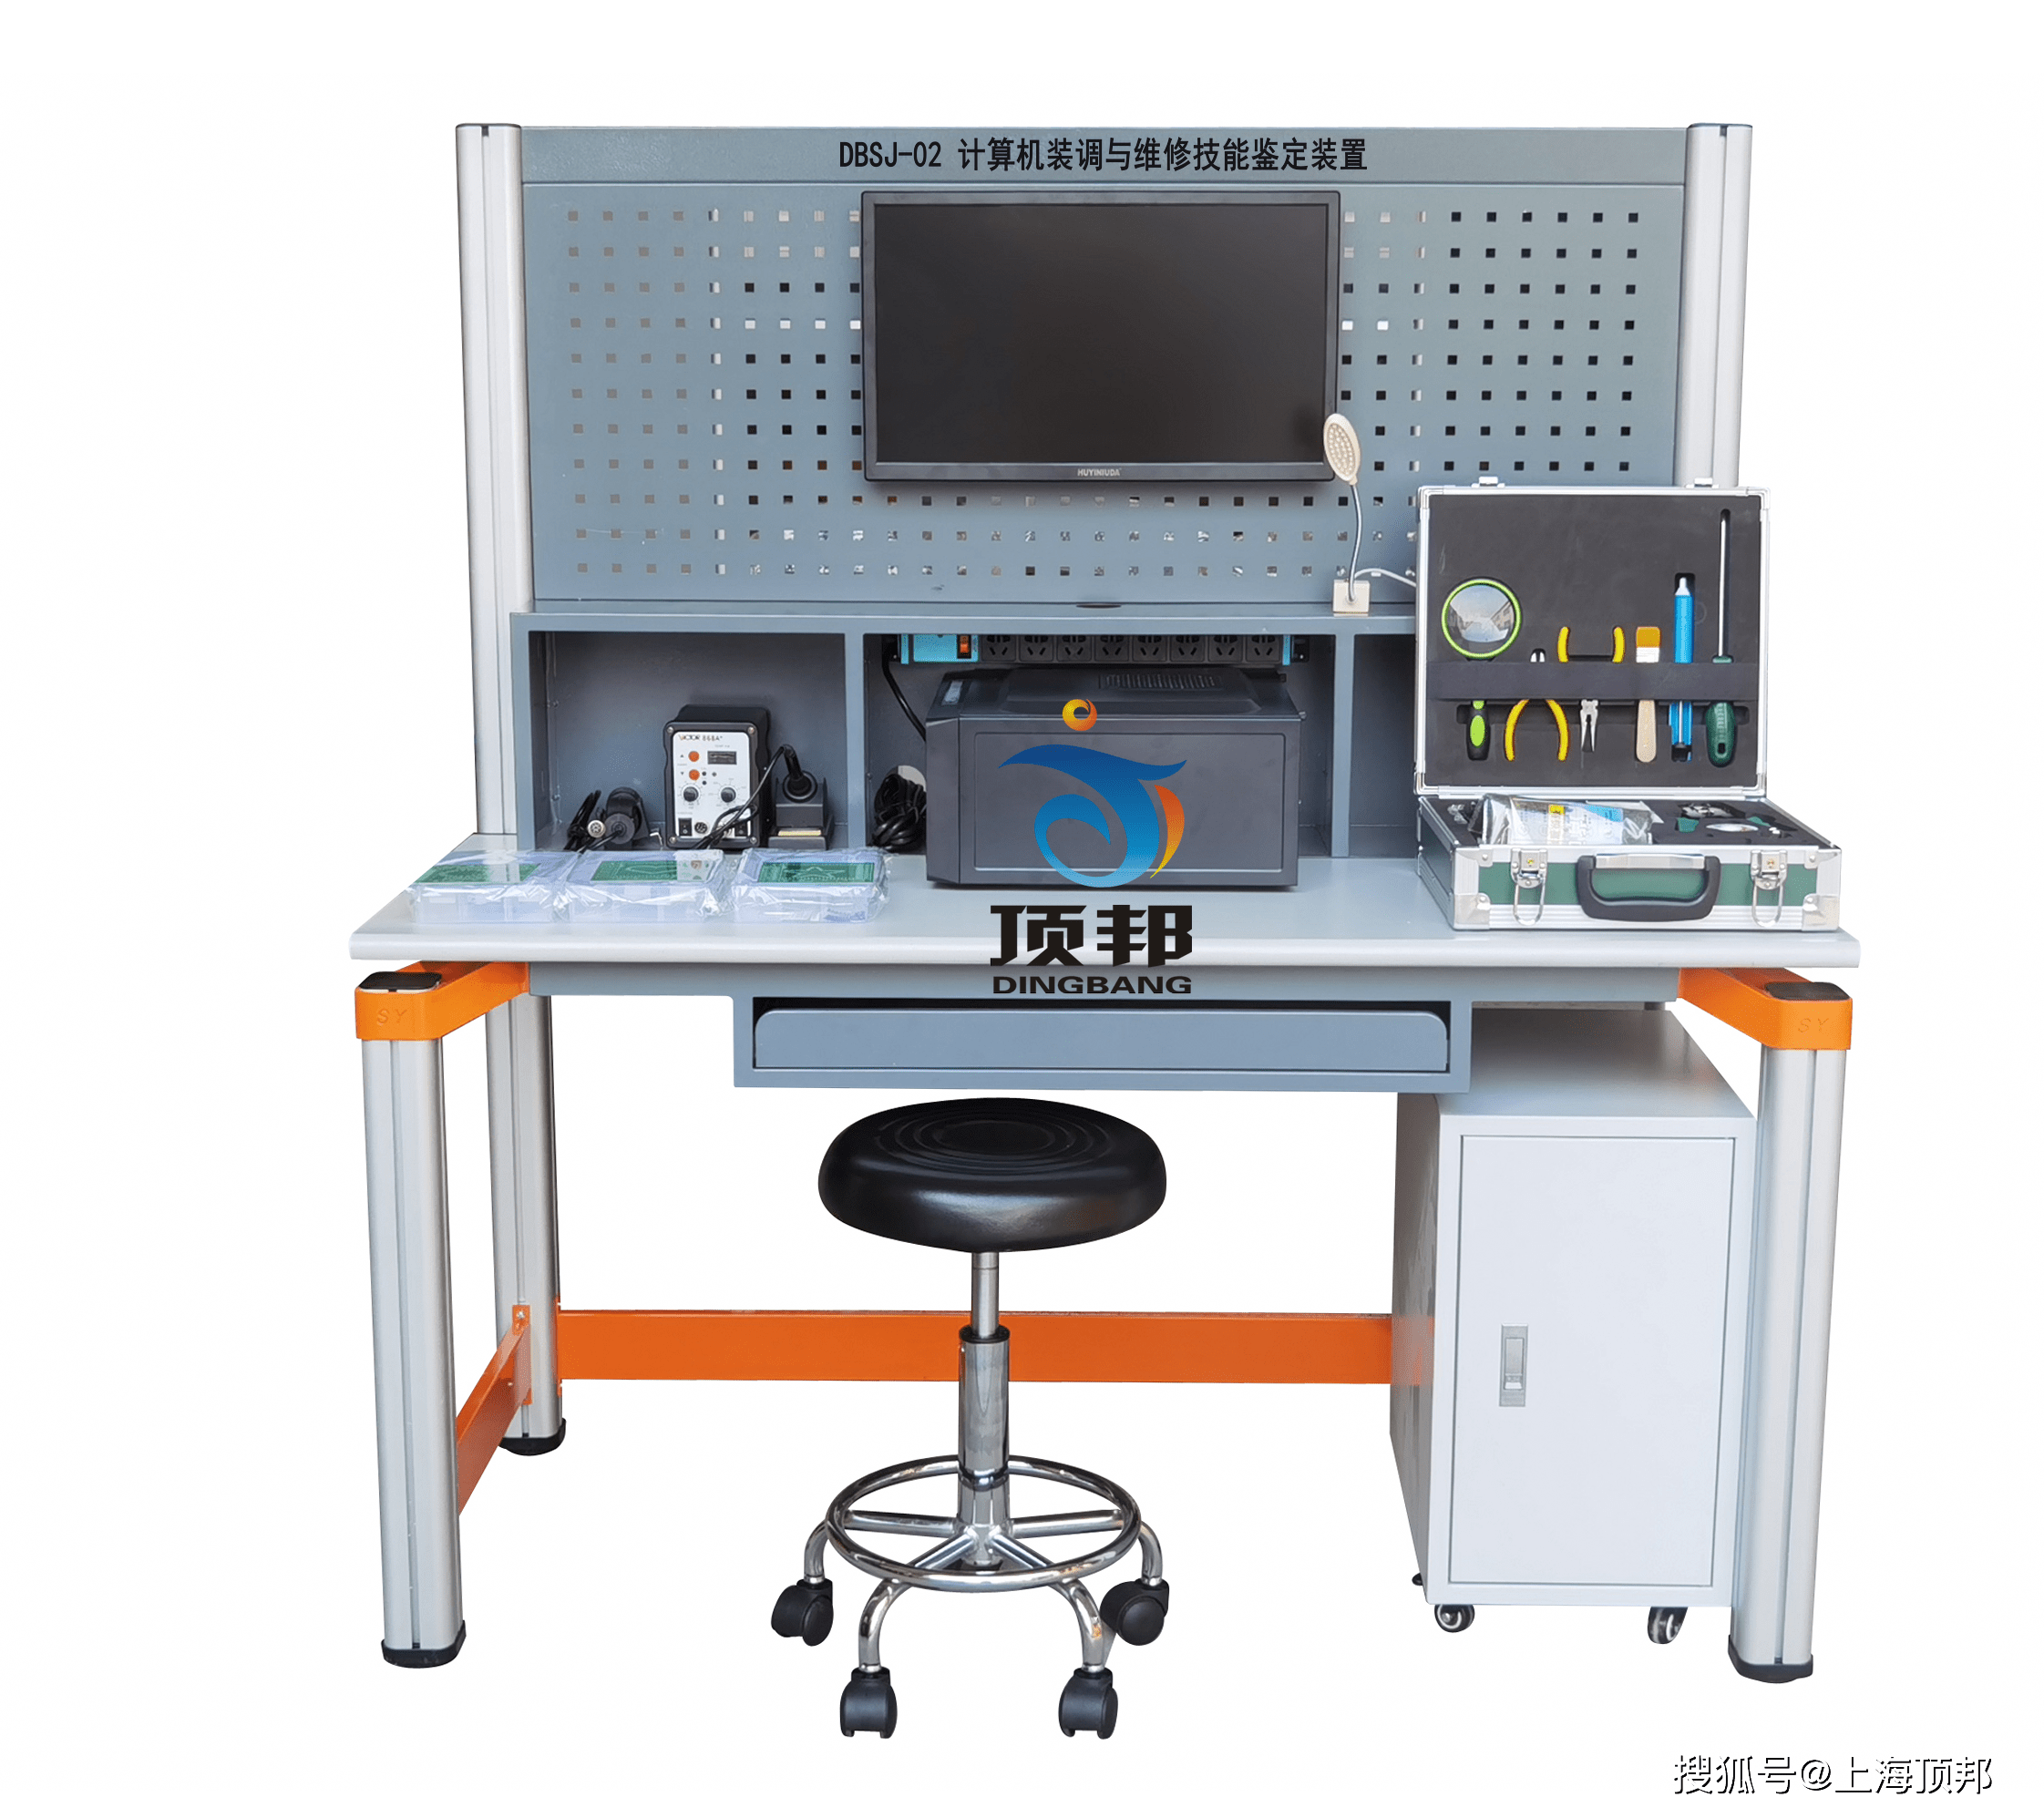 计算机装调与维修技能鉴定装置,计算机组装与维修实训设备